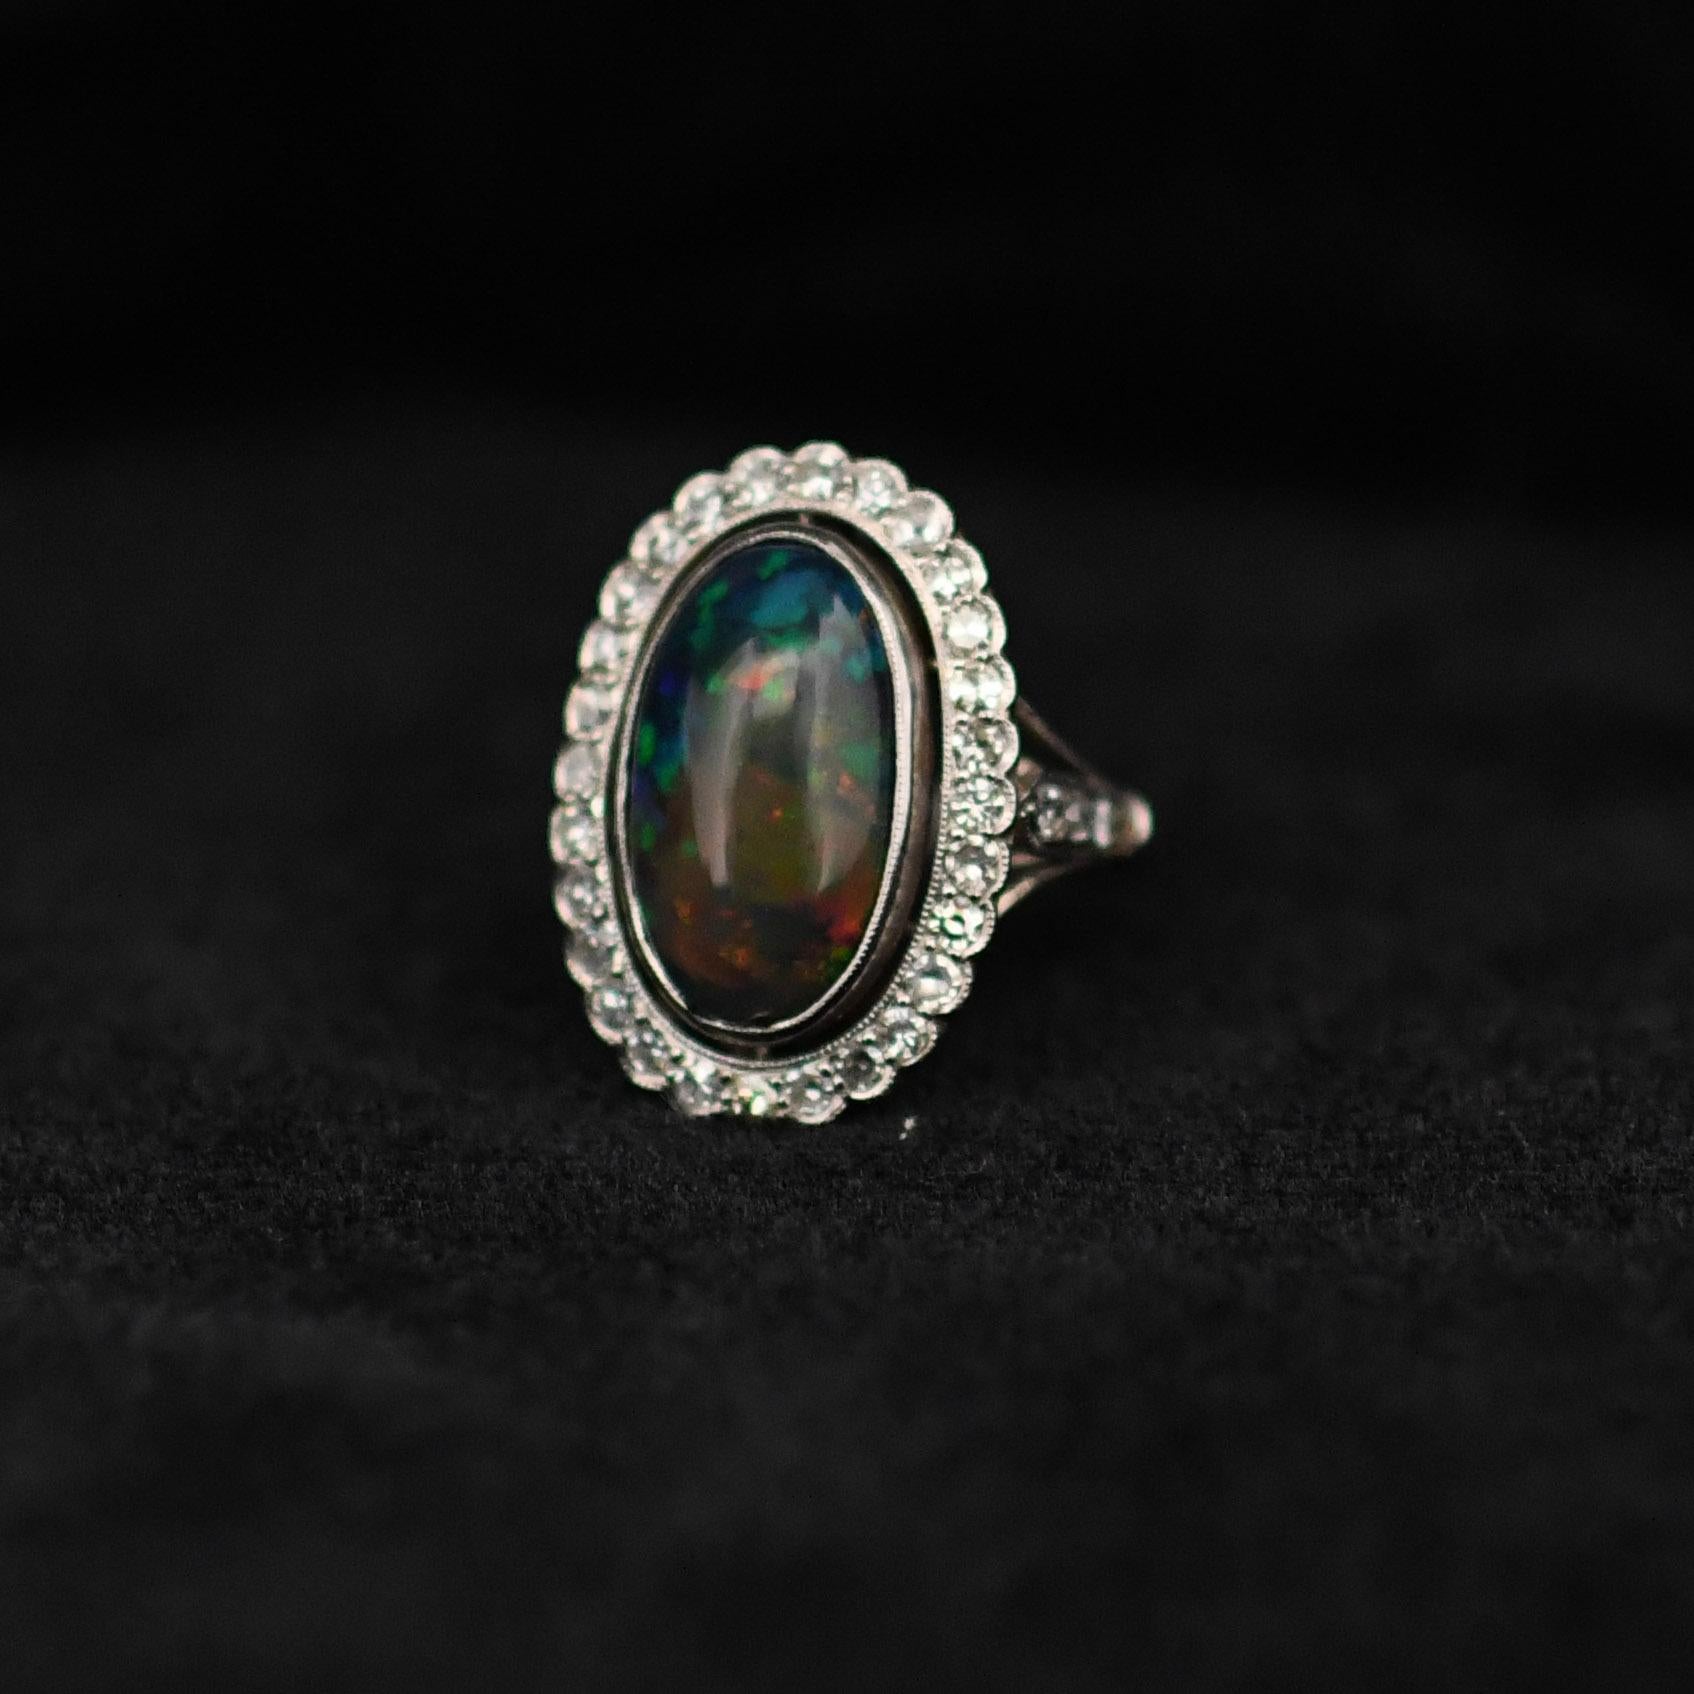 Lassen Sie sich von der exquisiten Schönheit dieses edwardianischen Opal-Cabochon-Rings verzaubern. Er präsentiert einen atemberaubenden 6,19-karätigen Opal mit einem faszinierenden Harlekin-Muster. Dieser handgefertigte Platinring besticht durch